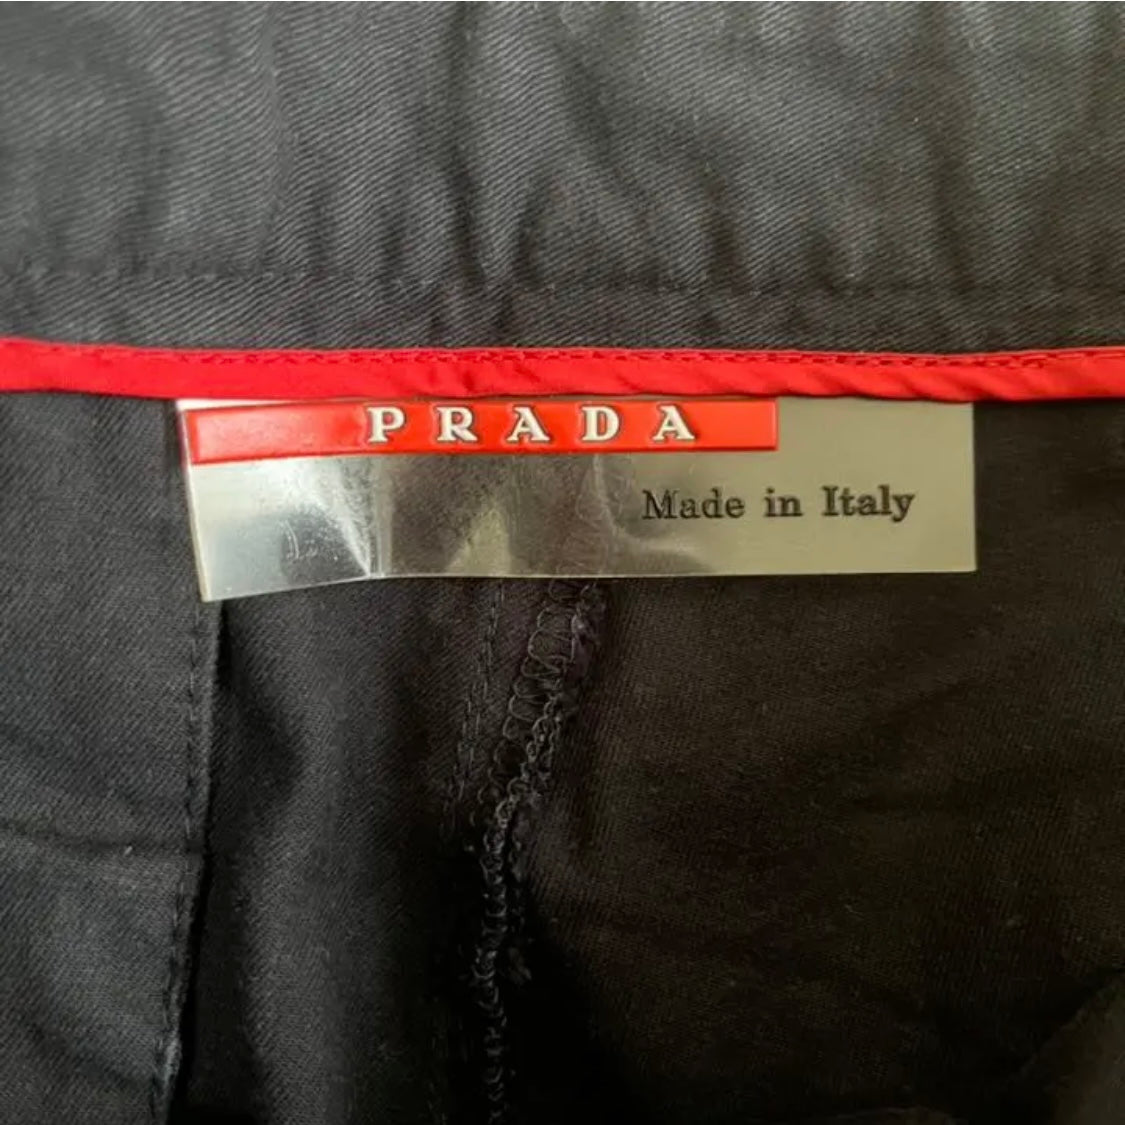 おすすめ おでおで様専用 Prada sport side zip フレア パンツ econet.bi